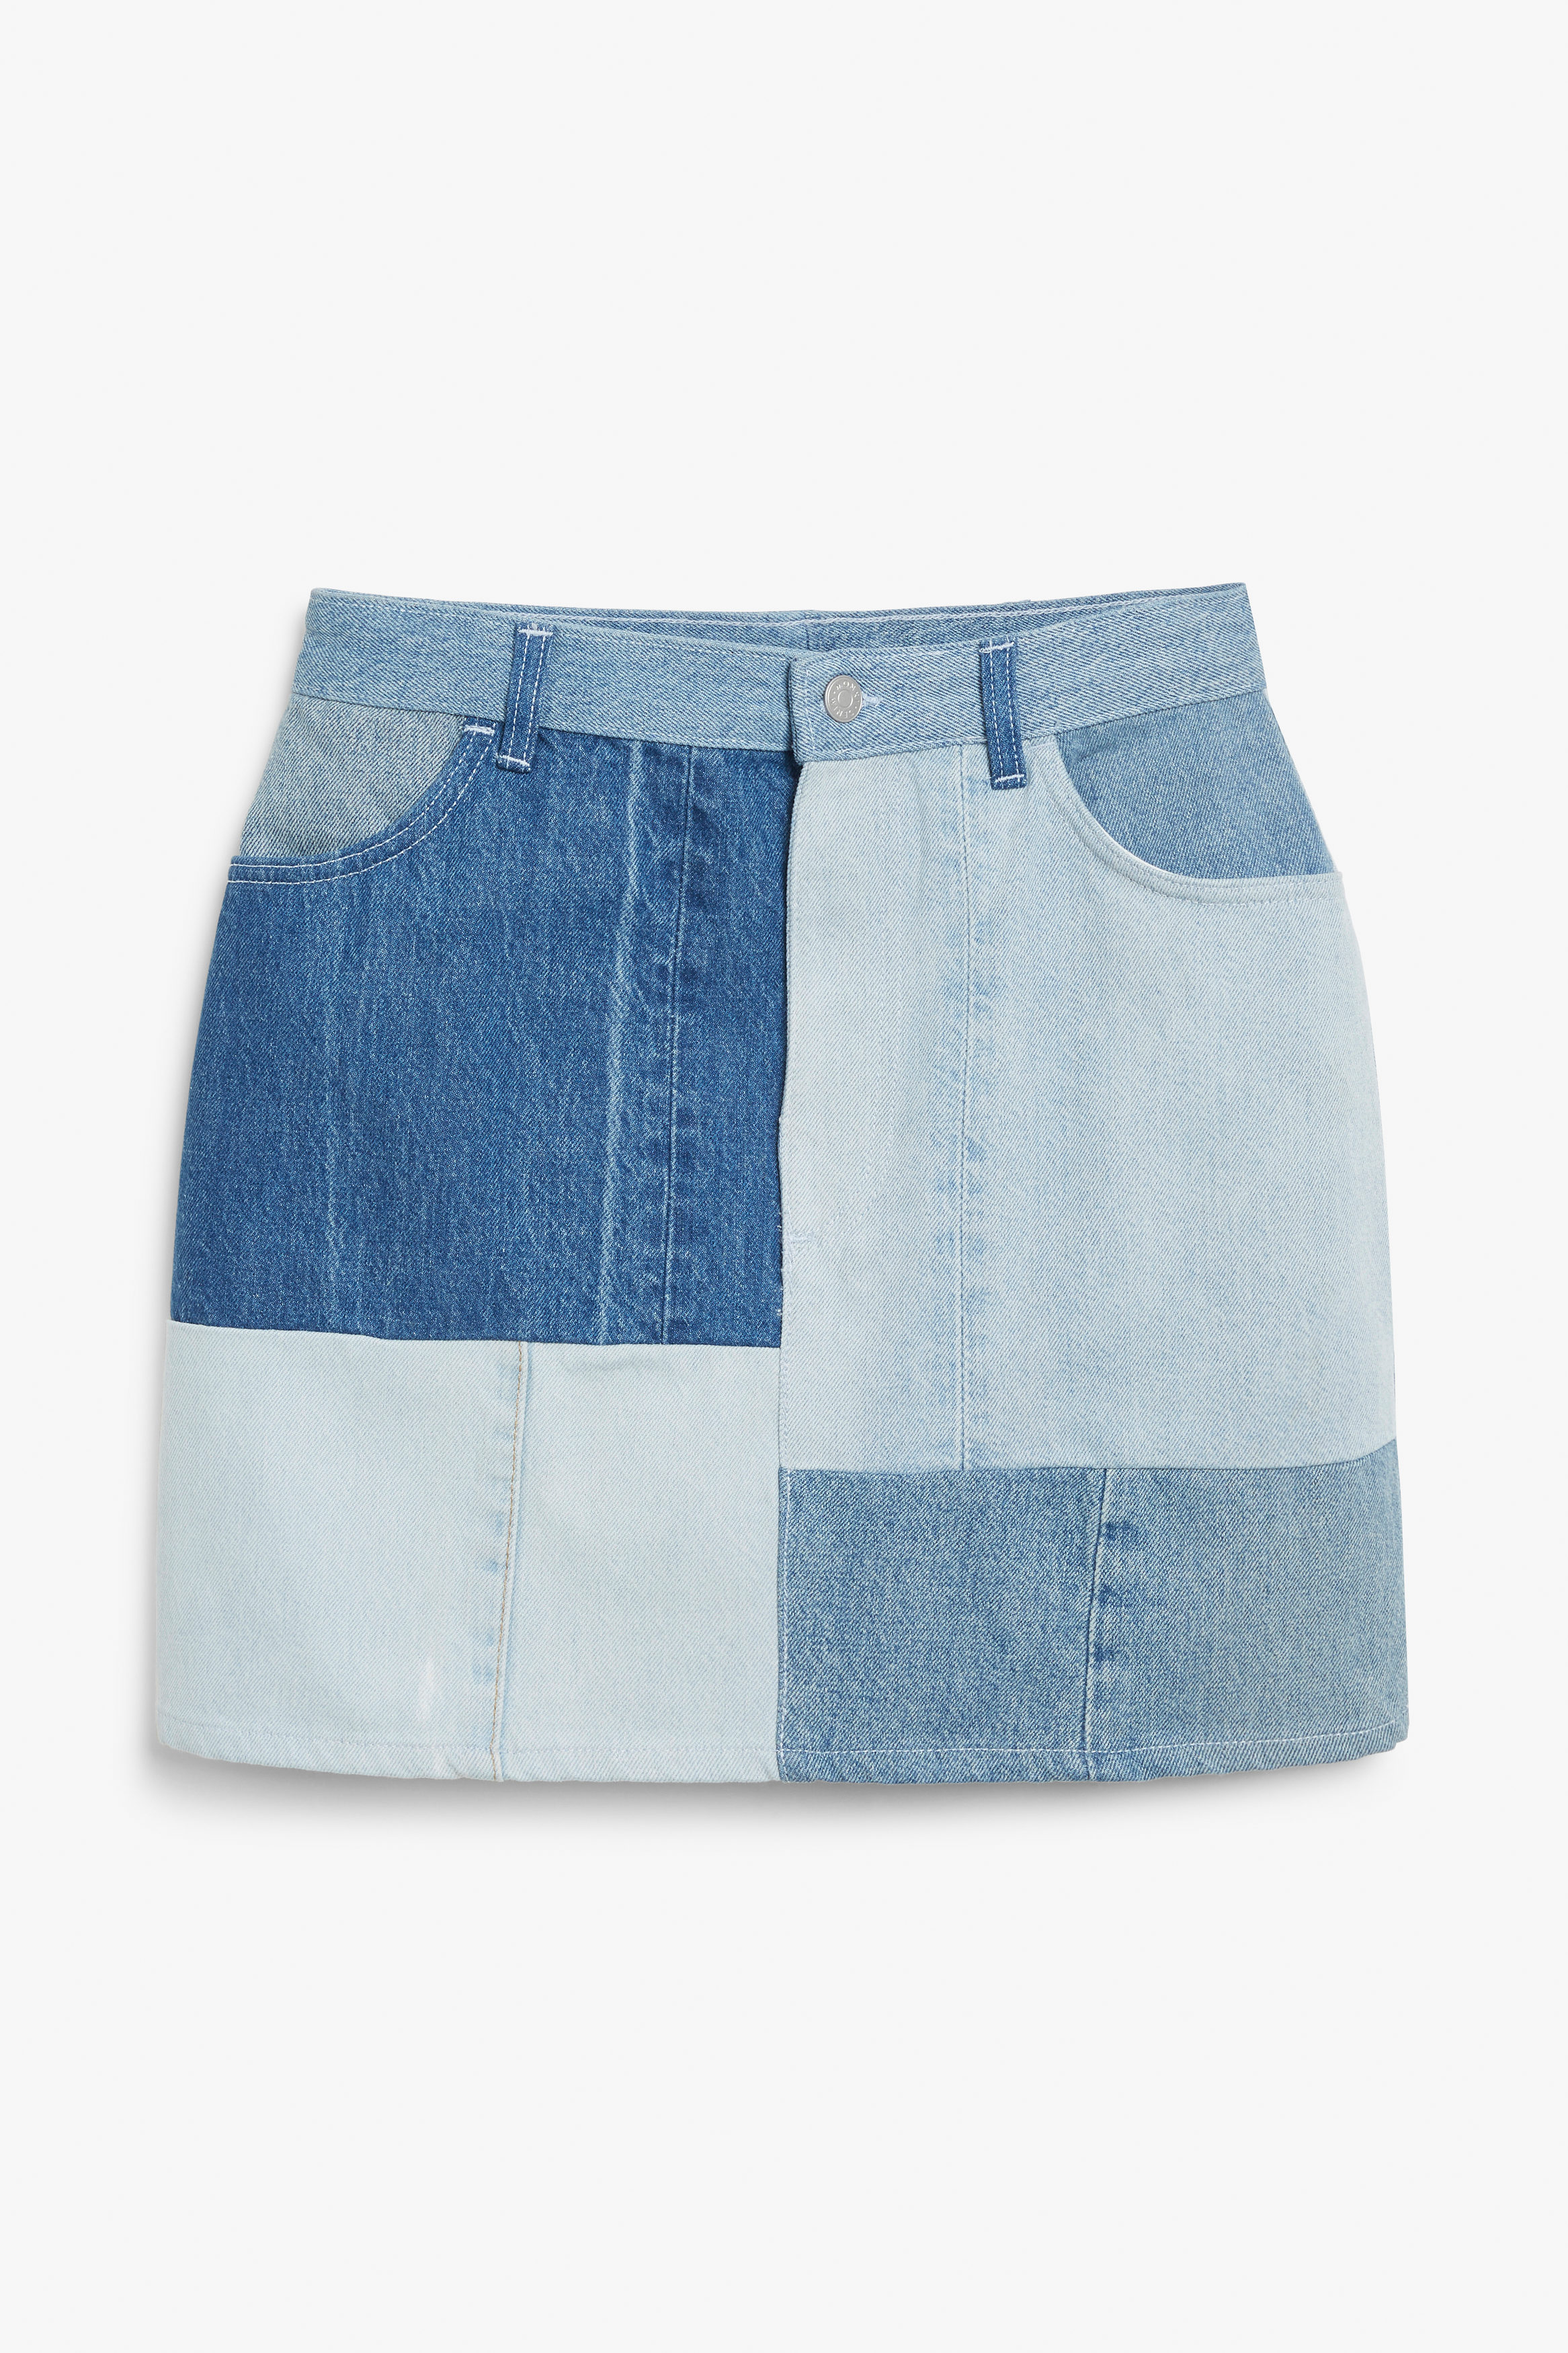 Billede af Monki Patchwork-nederdel I Blå Denim Mellemblå Støvet, Nederdele. Farve: Blue medium dusty størrelse 42